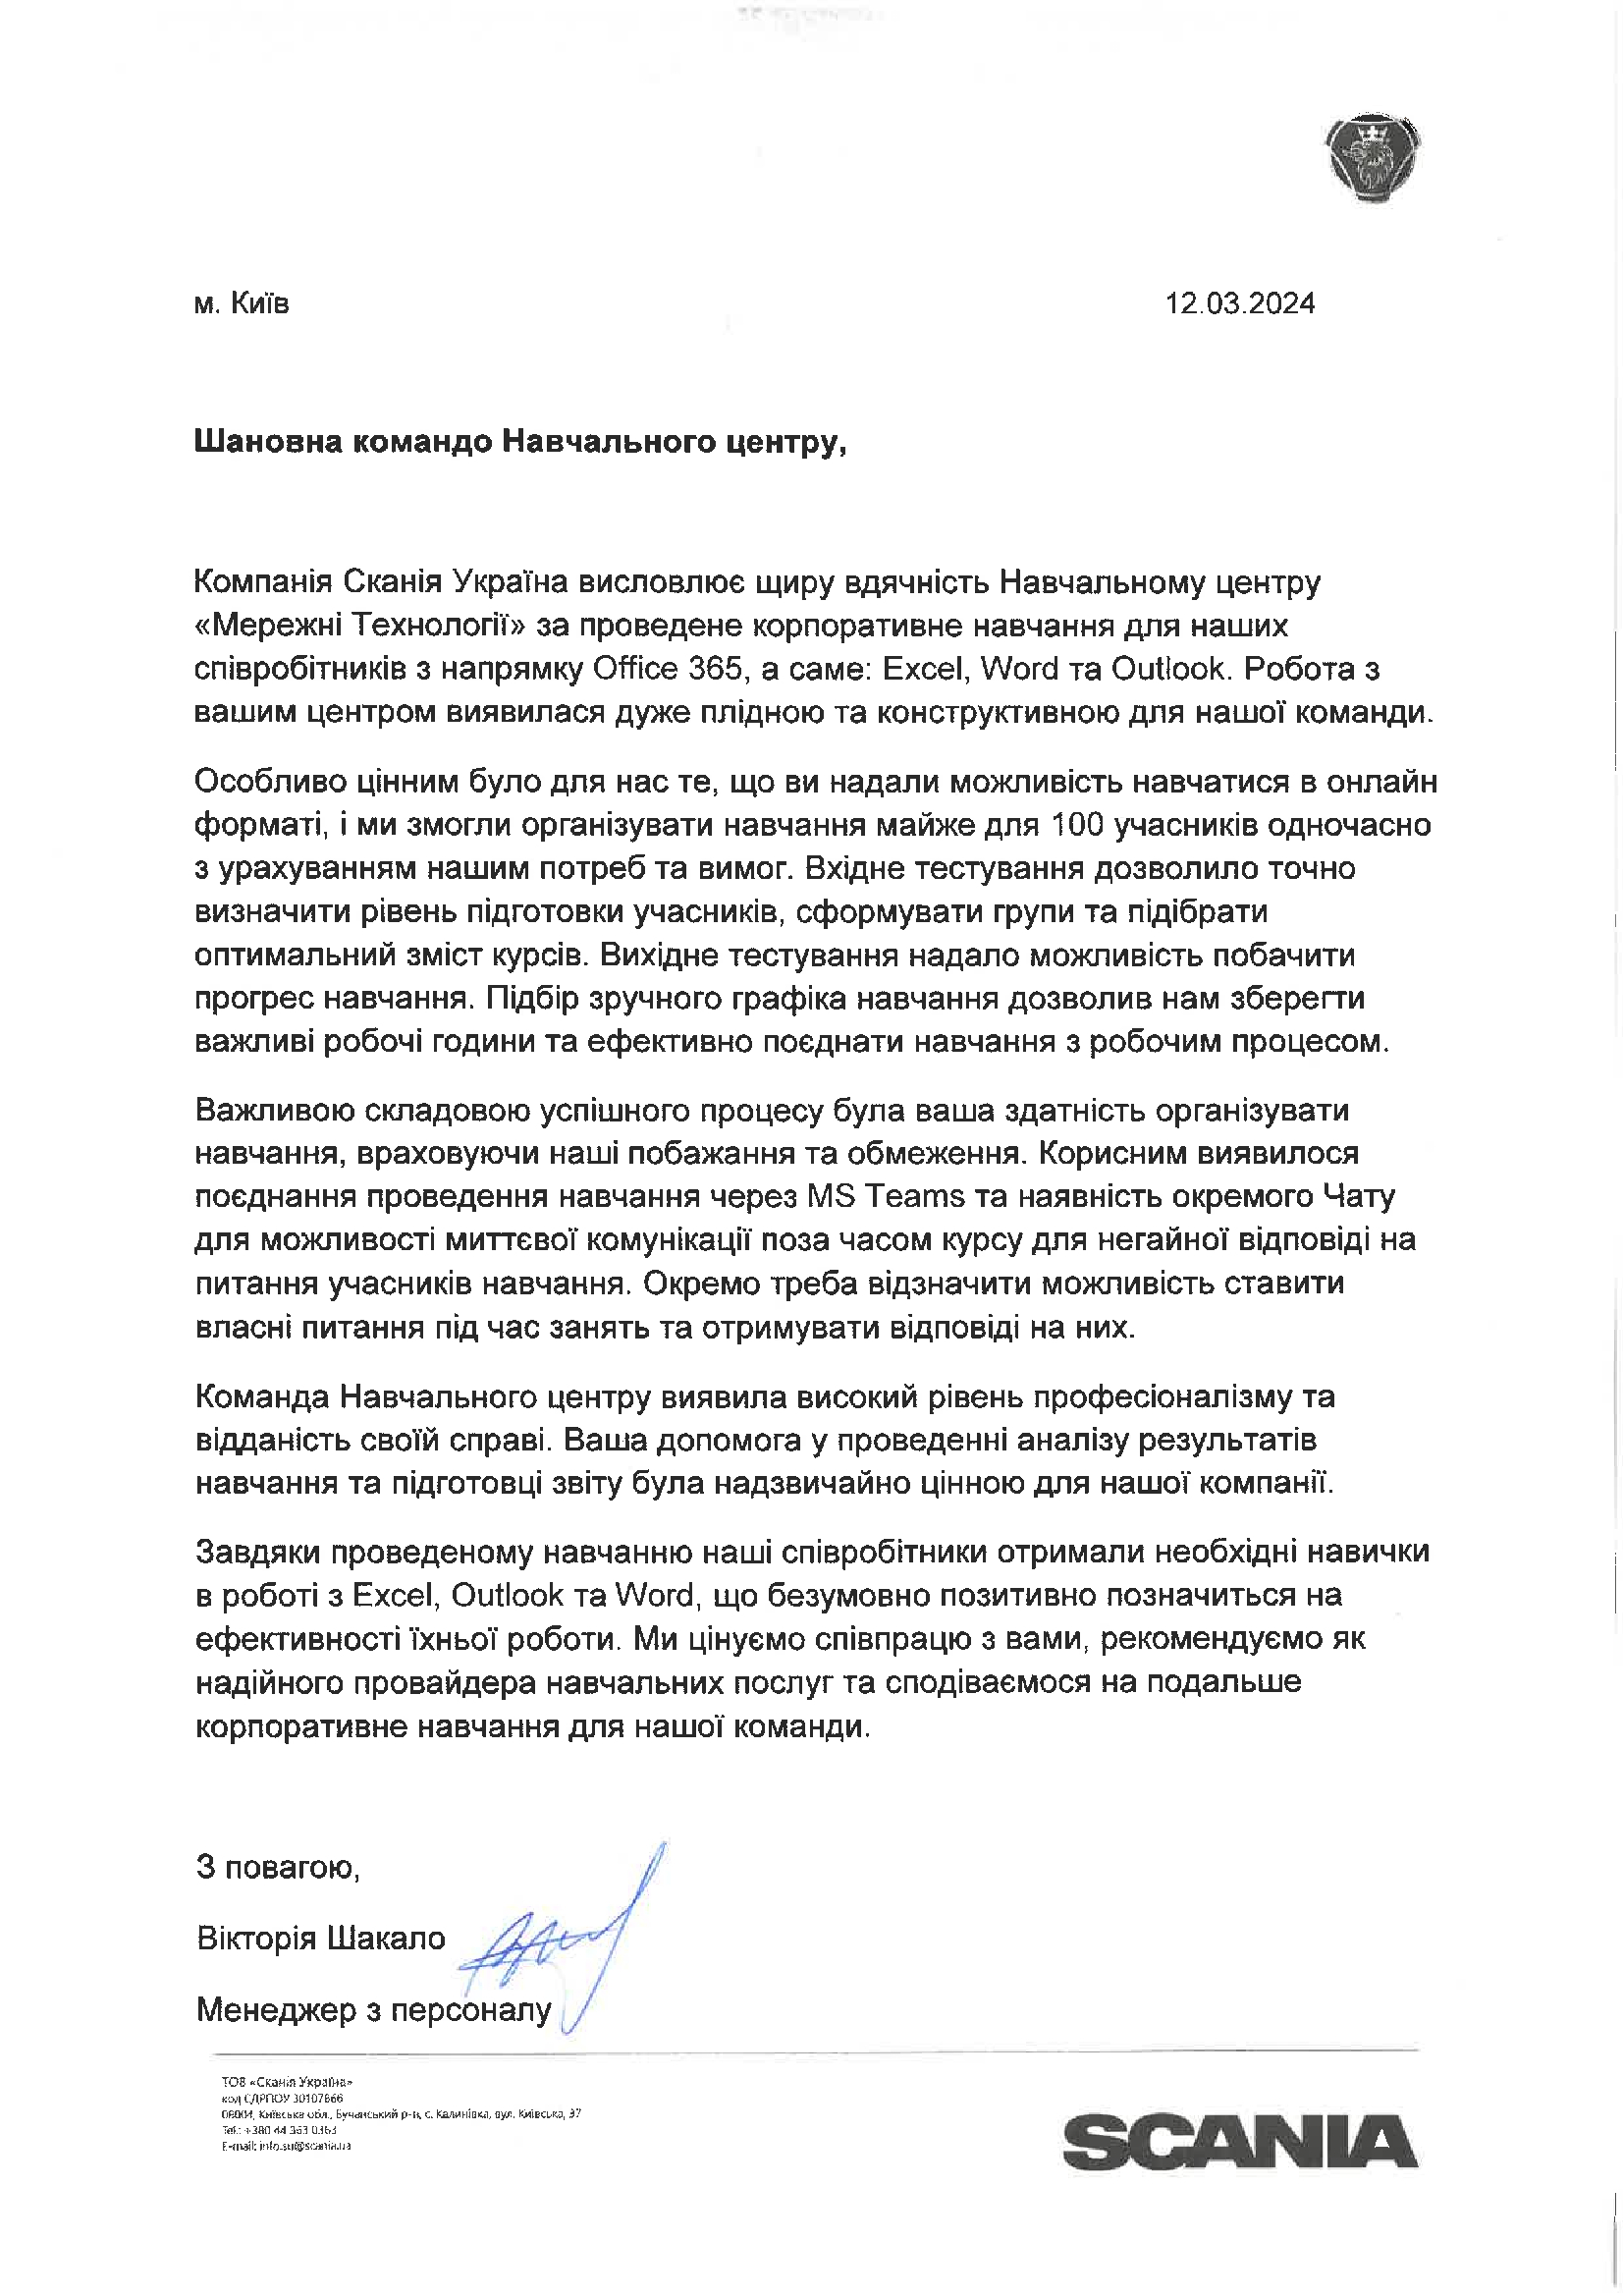 Відгук ТОВ «Сканія Україна» про НЦ Мережні Технології